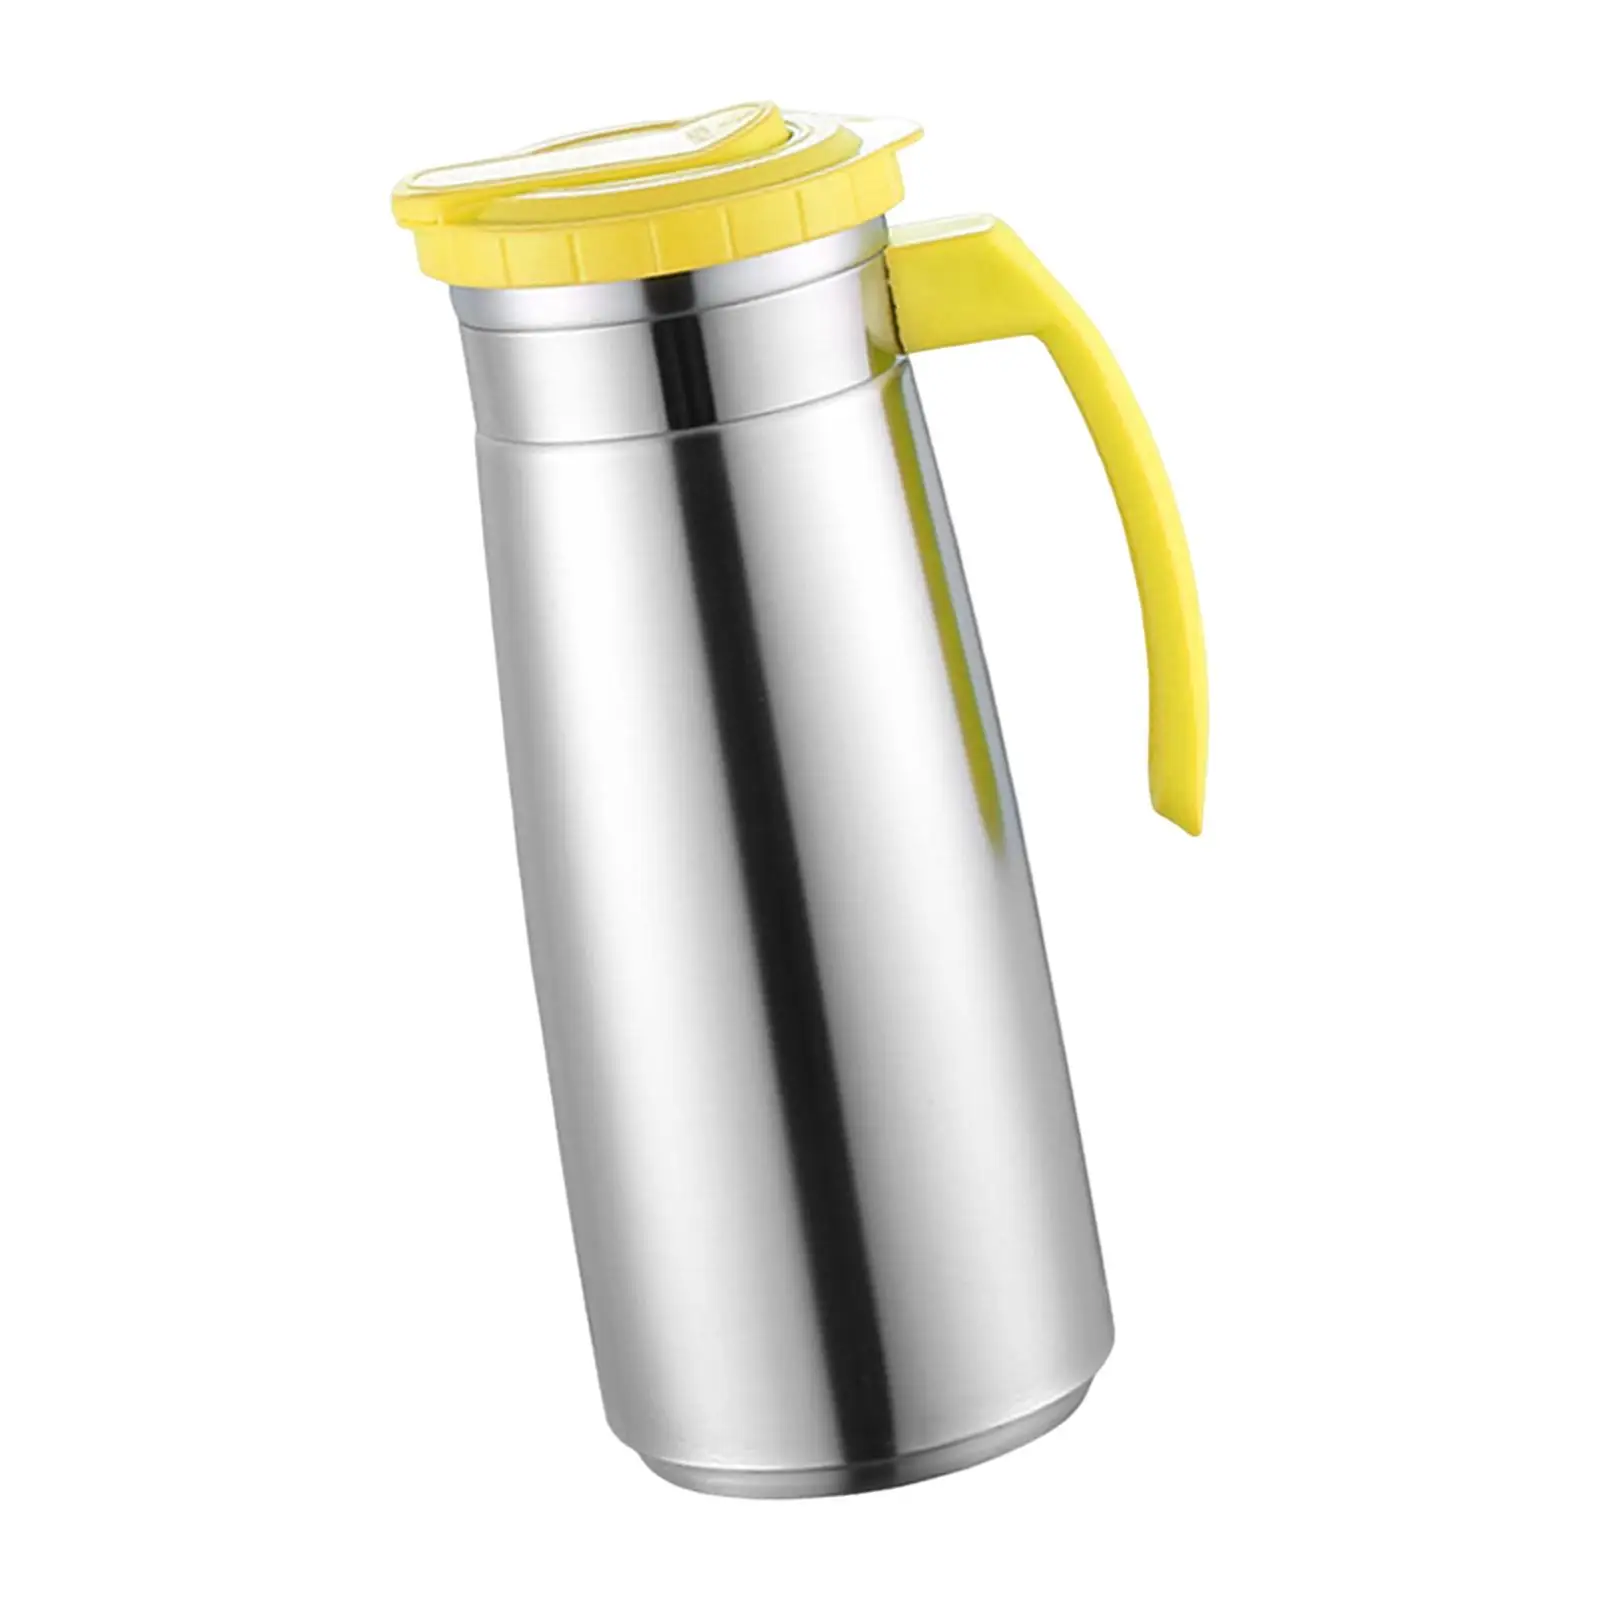 Stainless Steel Jug 1300ml Large Capacity Cold Kettle Drinks Water Jug Water Pitcher for Tea Milk Lemonade Beverage Juice